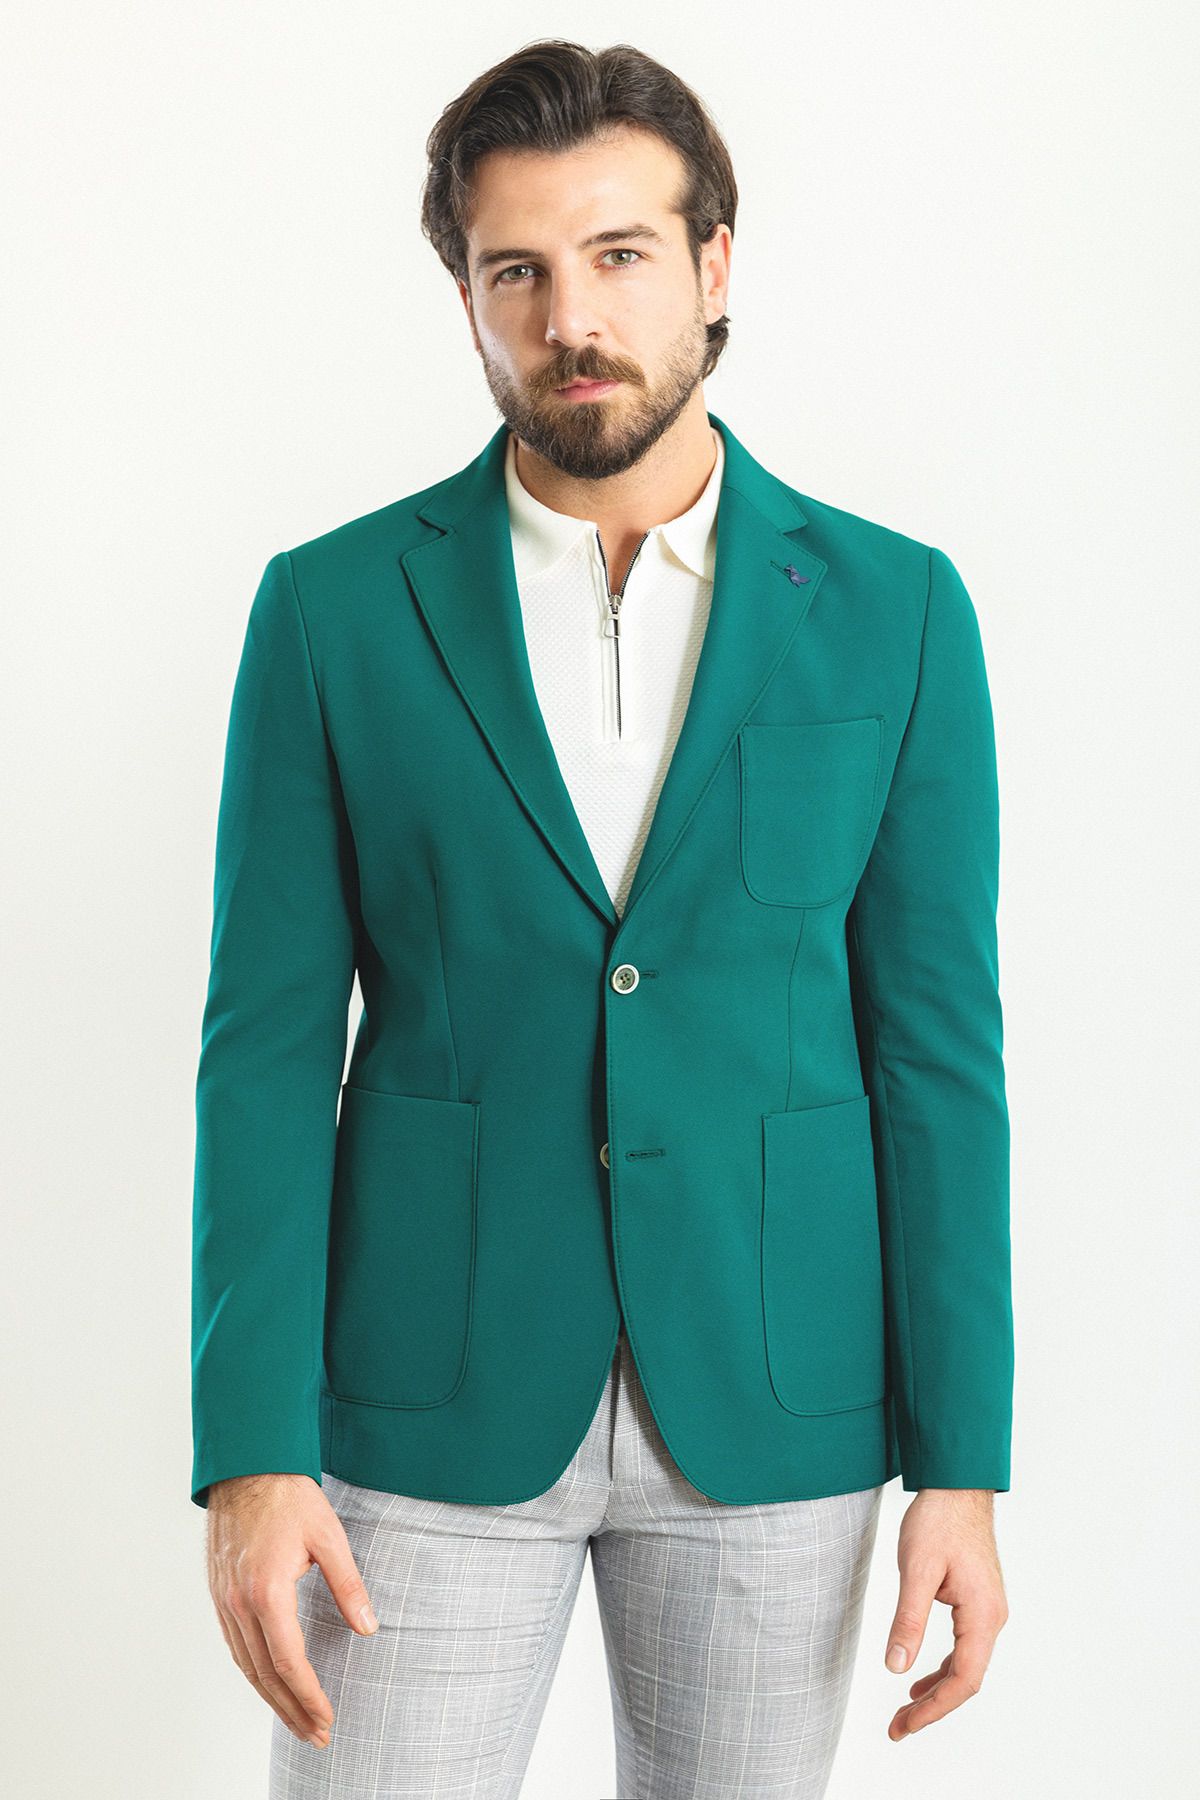 Mcr Düz Yeşil Rengi Slim Fit Torba Cep Mono Yaka Erkek Ceket